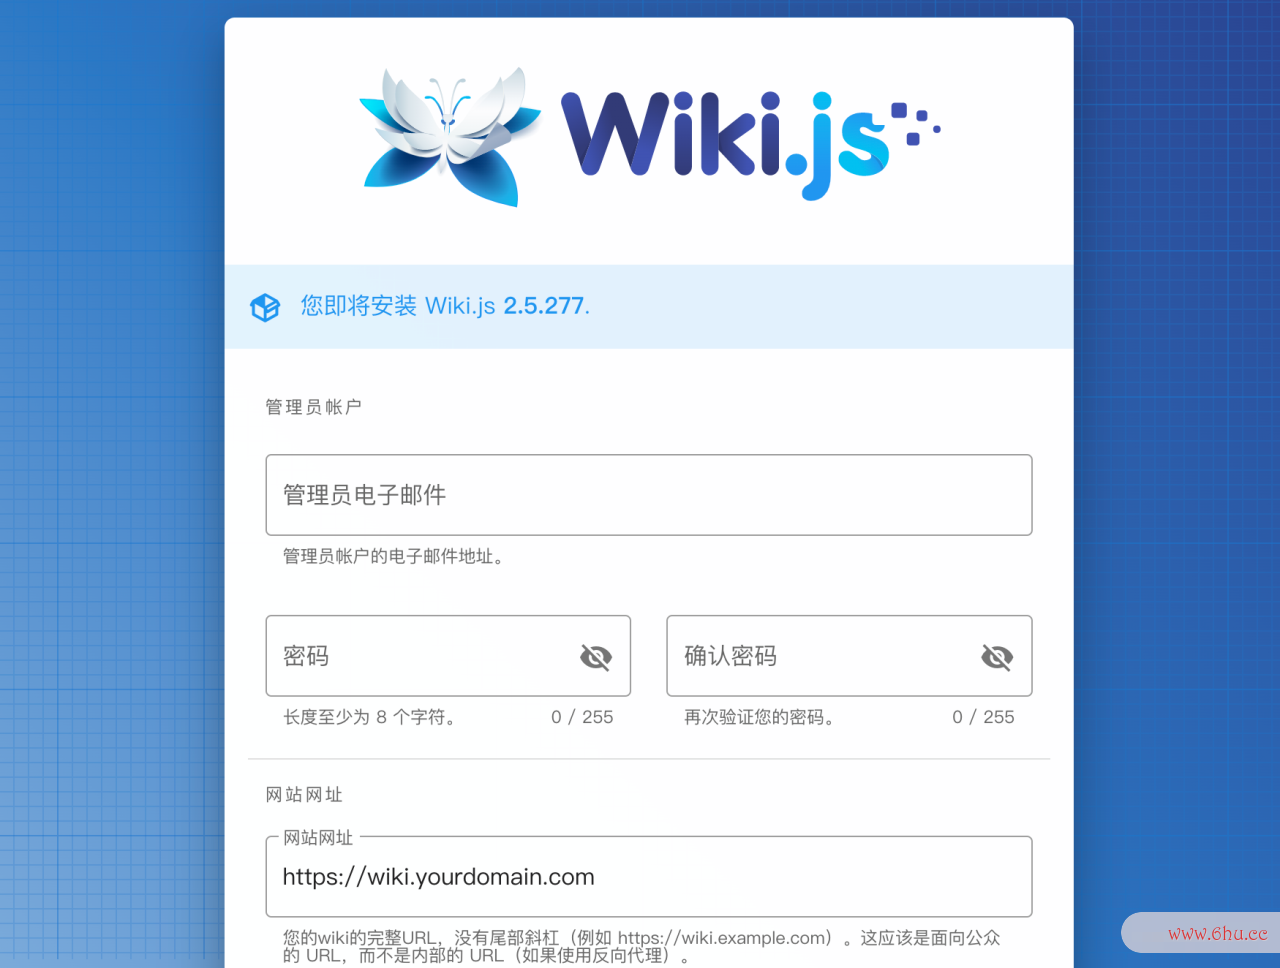 支撑中文！秒建 wiki 常识库的开源项目，构建私家常识网络